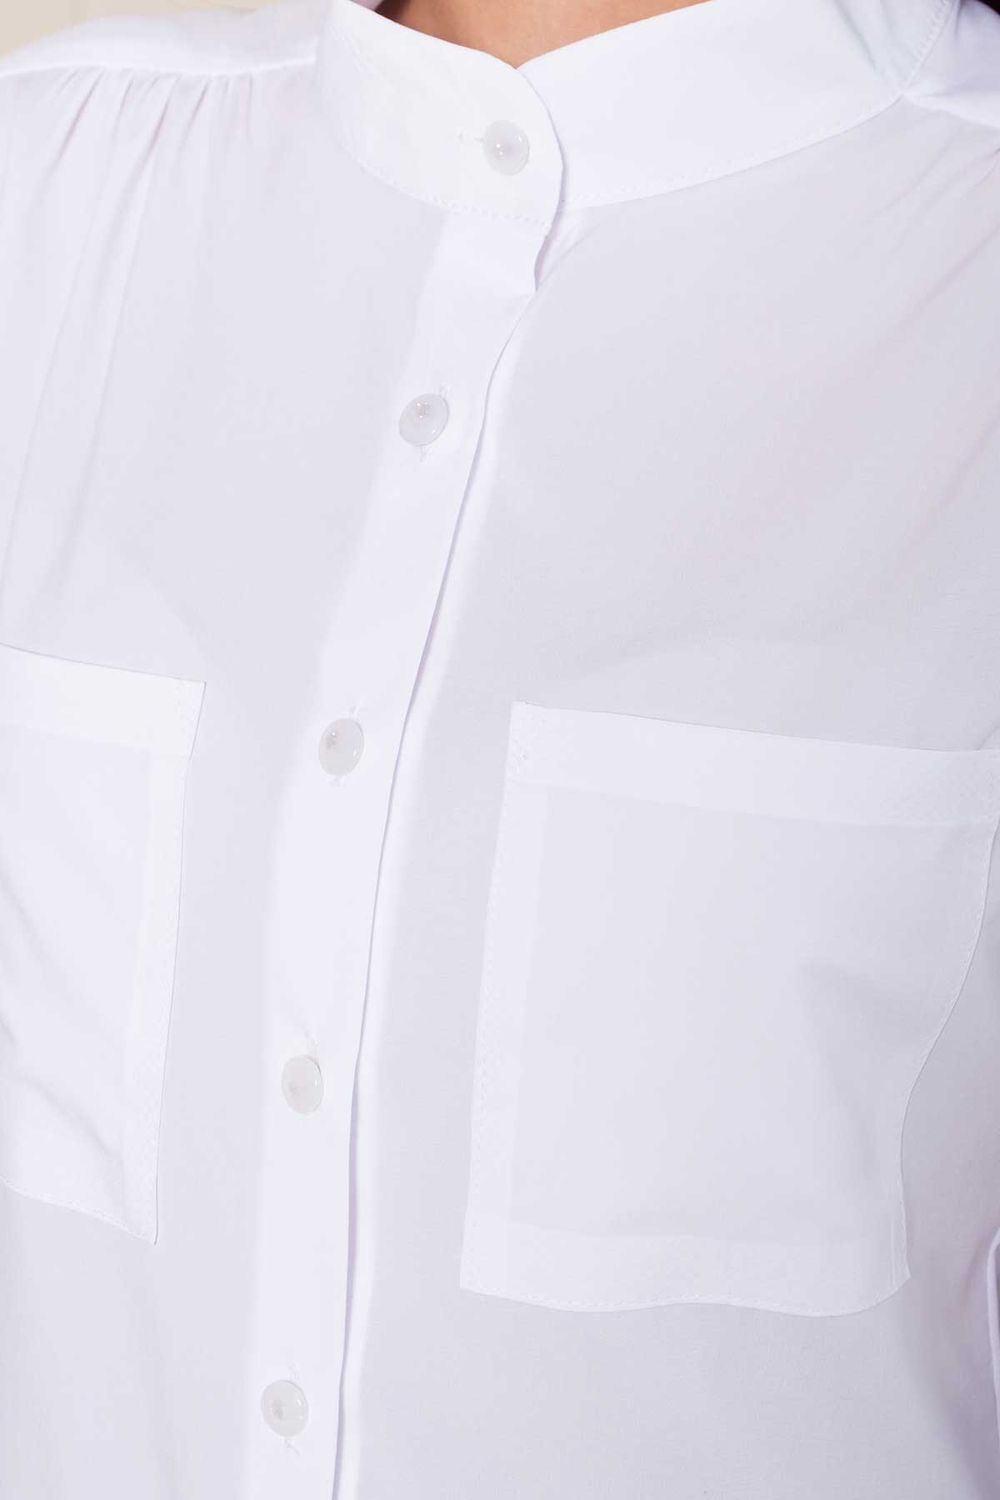 Біла шифонова блузка в діловому стилі - фото